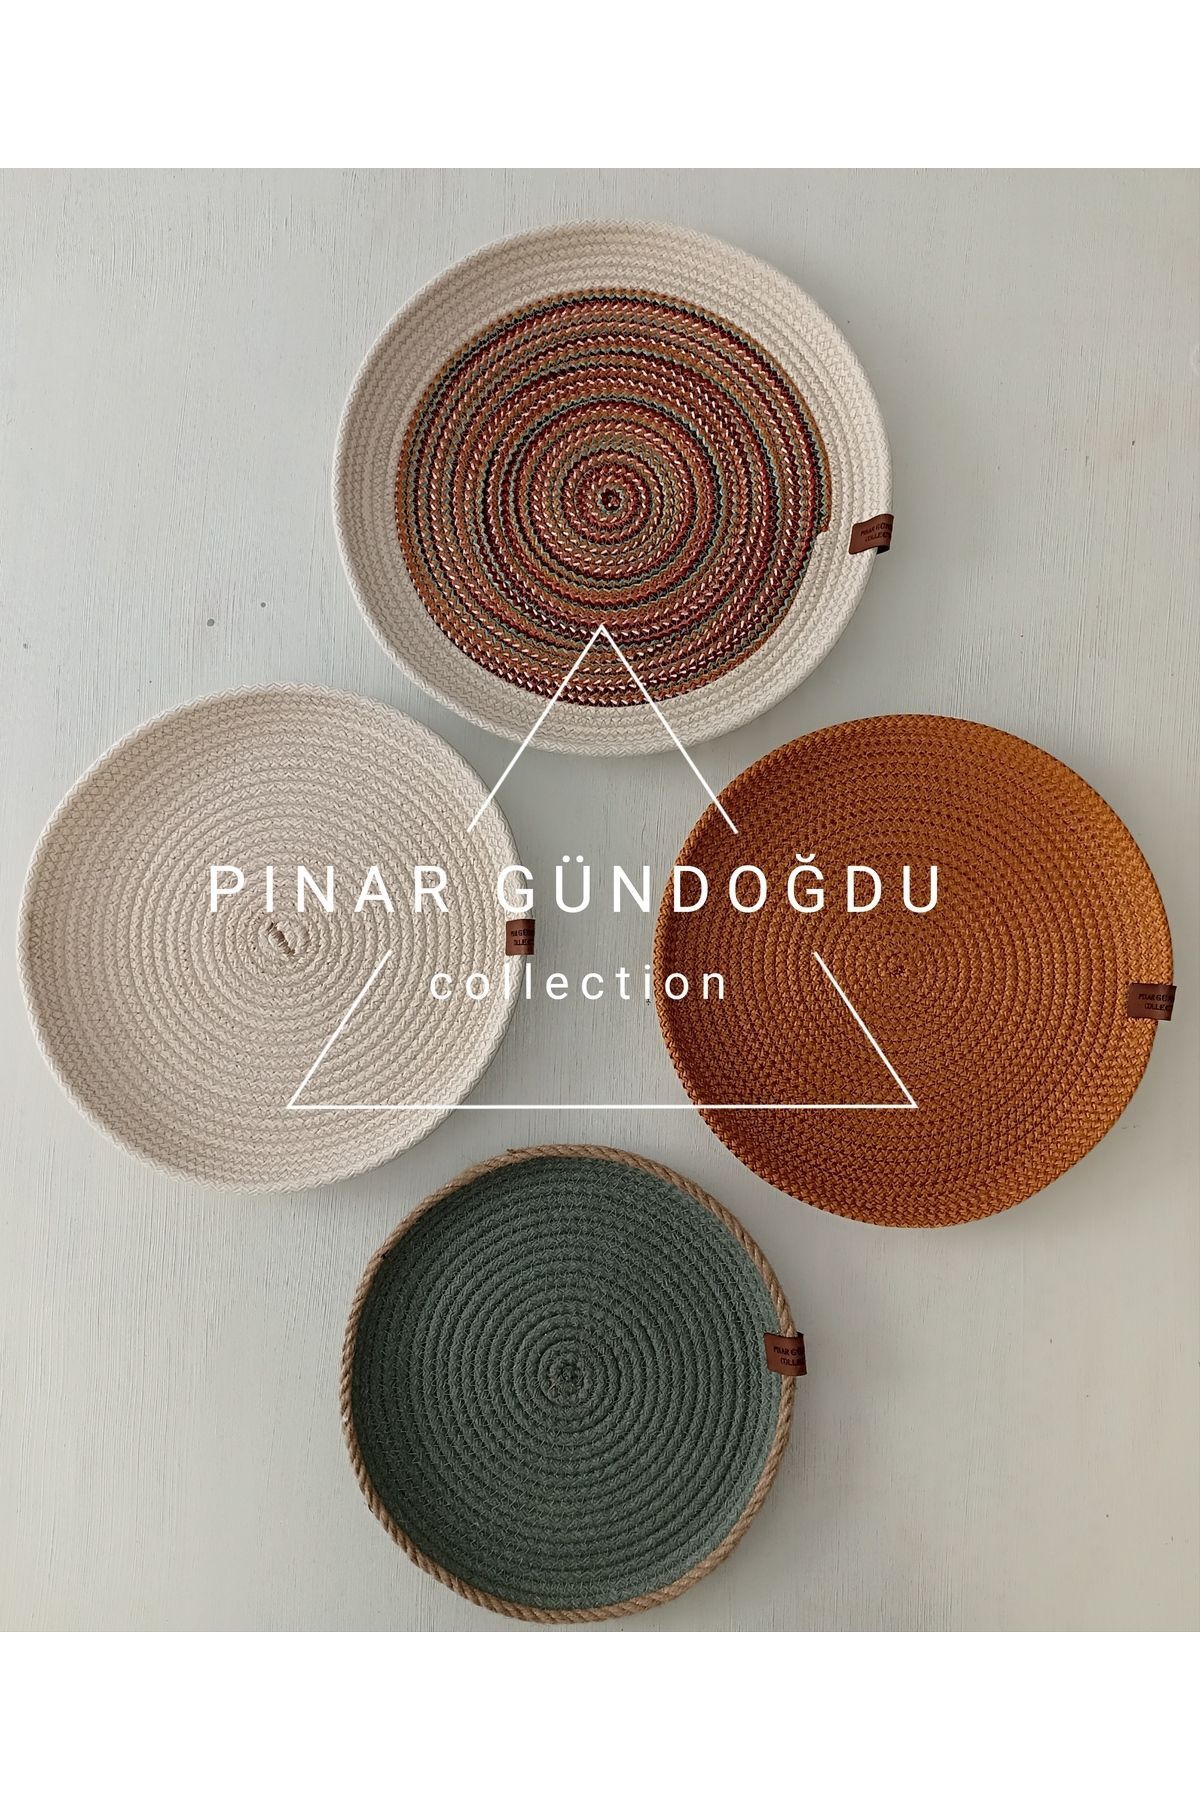 Pınar Gündoğdu Collection Hasır duvar tabağı Afrikan duvar tabağı bohem duvar süsü 4 lü set